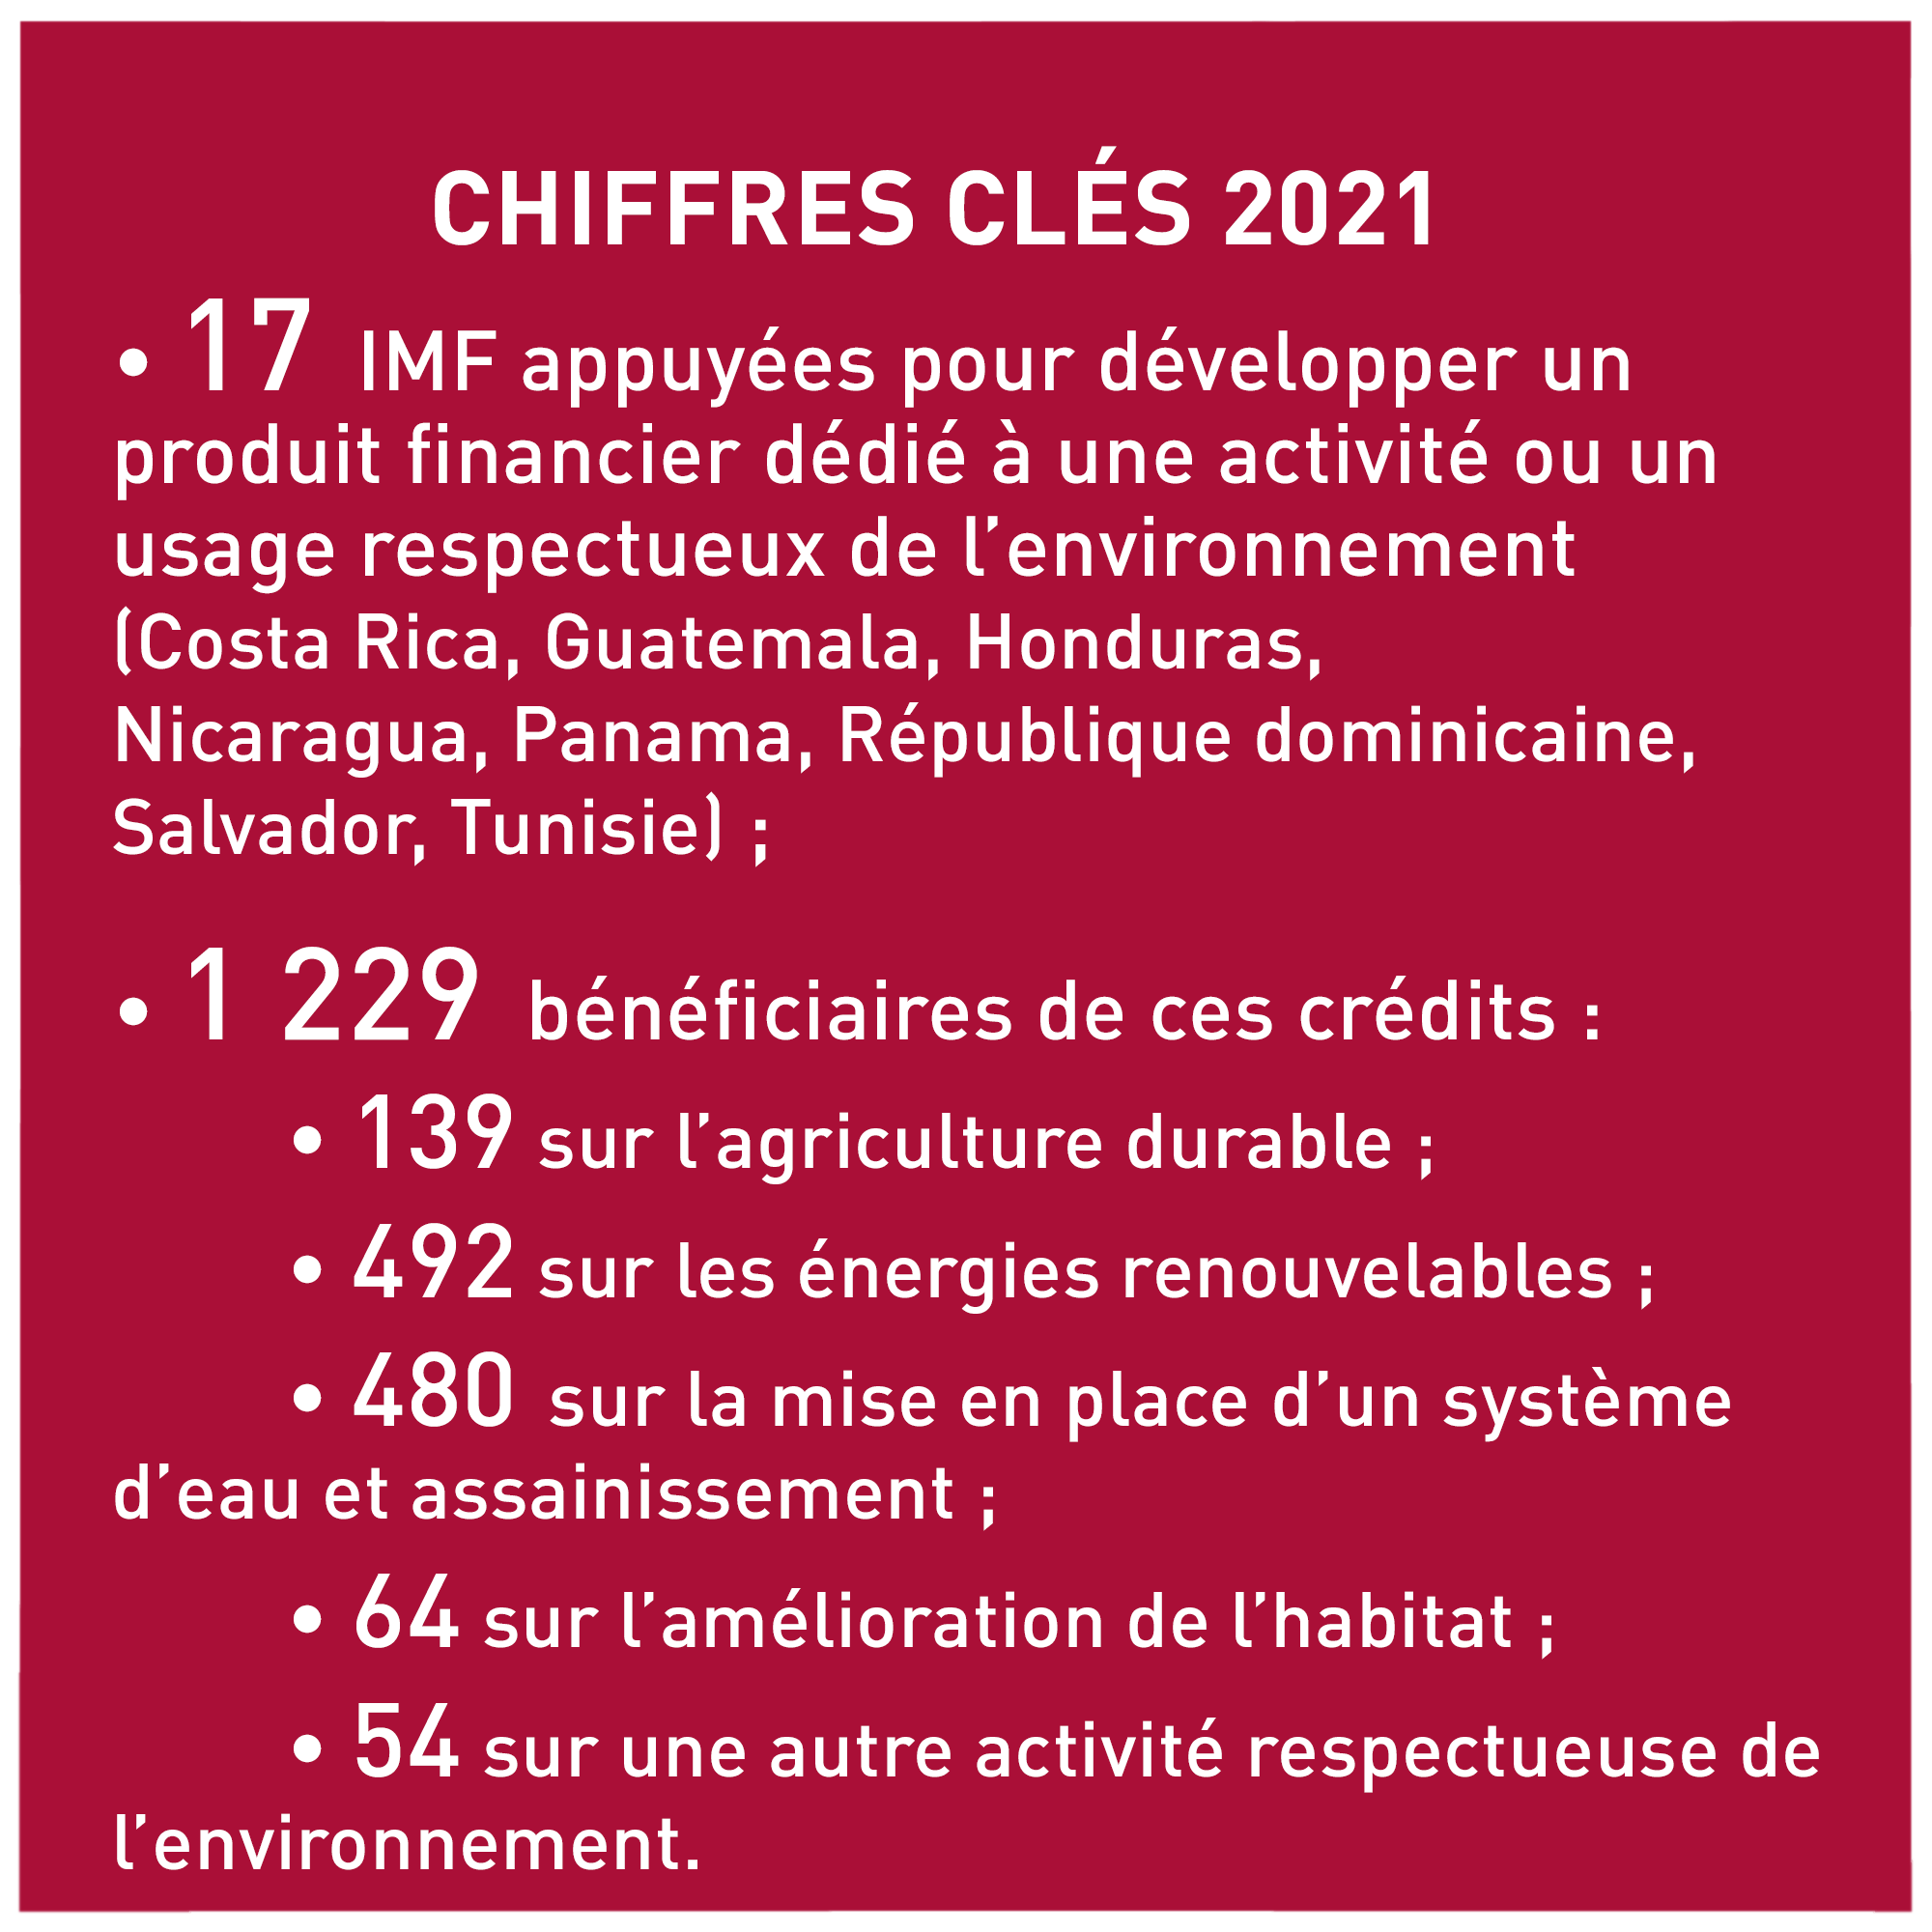 Chiffres clés 2021 microfinance verte